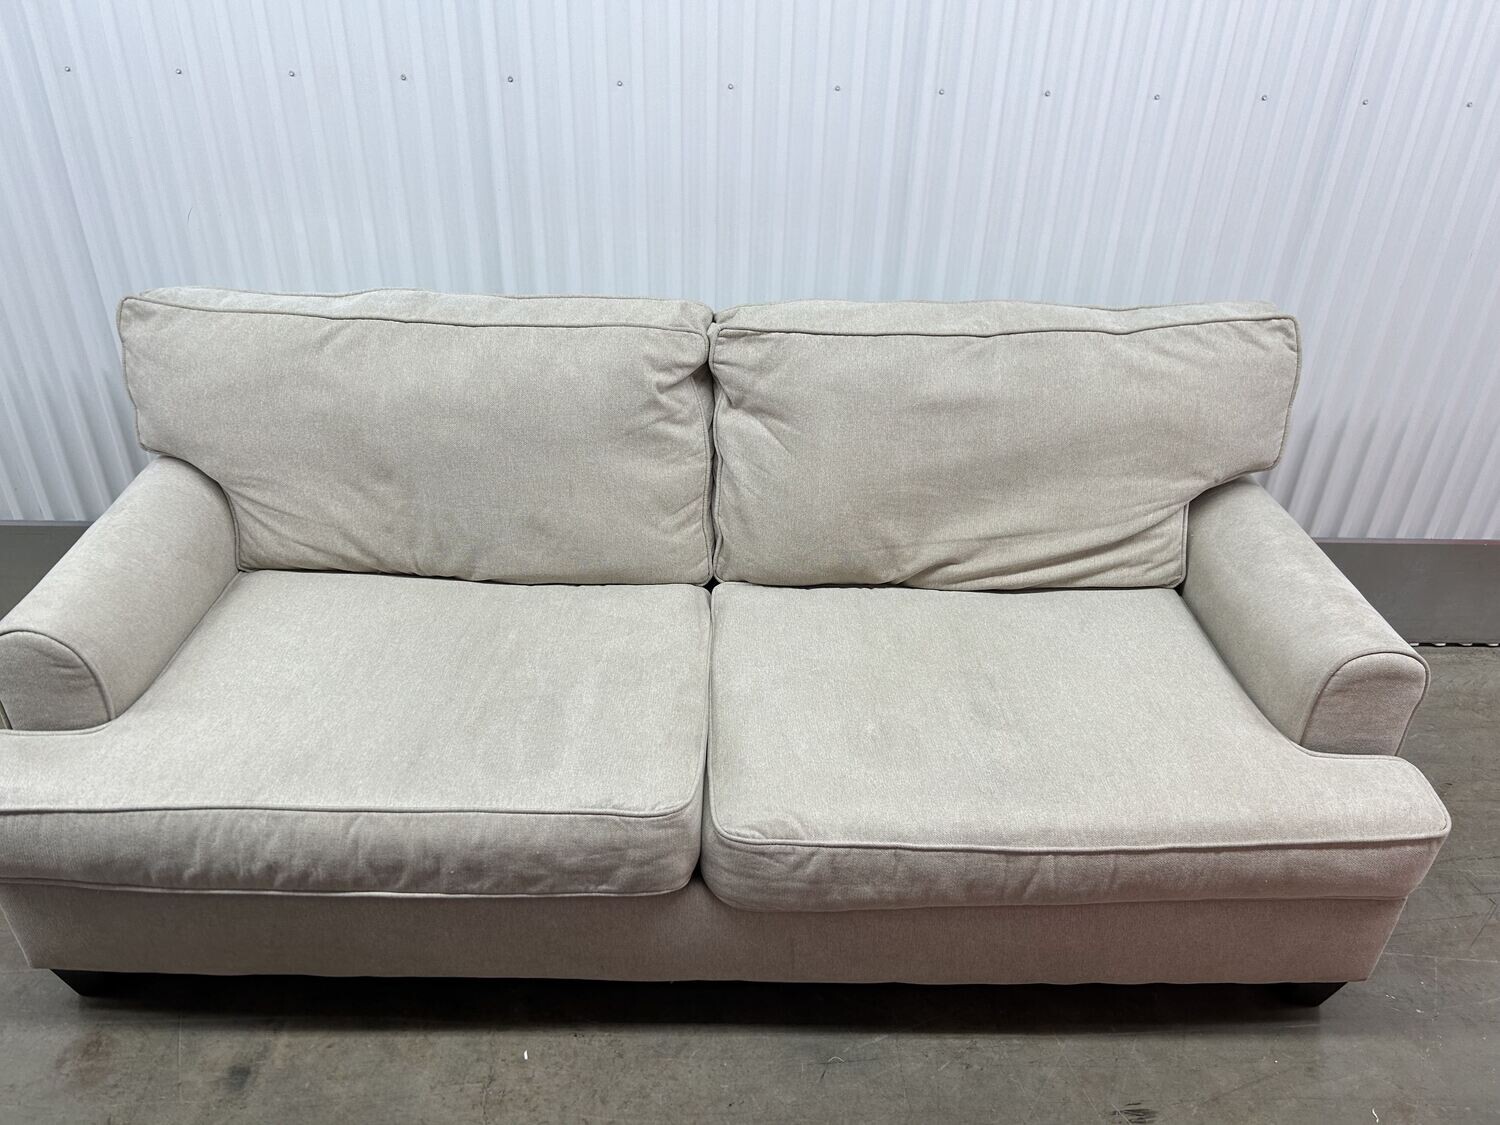 Cream color Sofa, American Furn. Co #2125